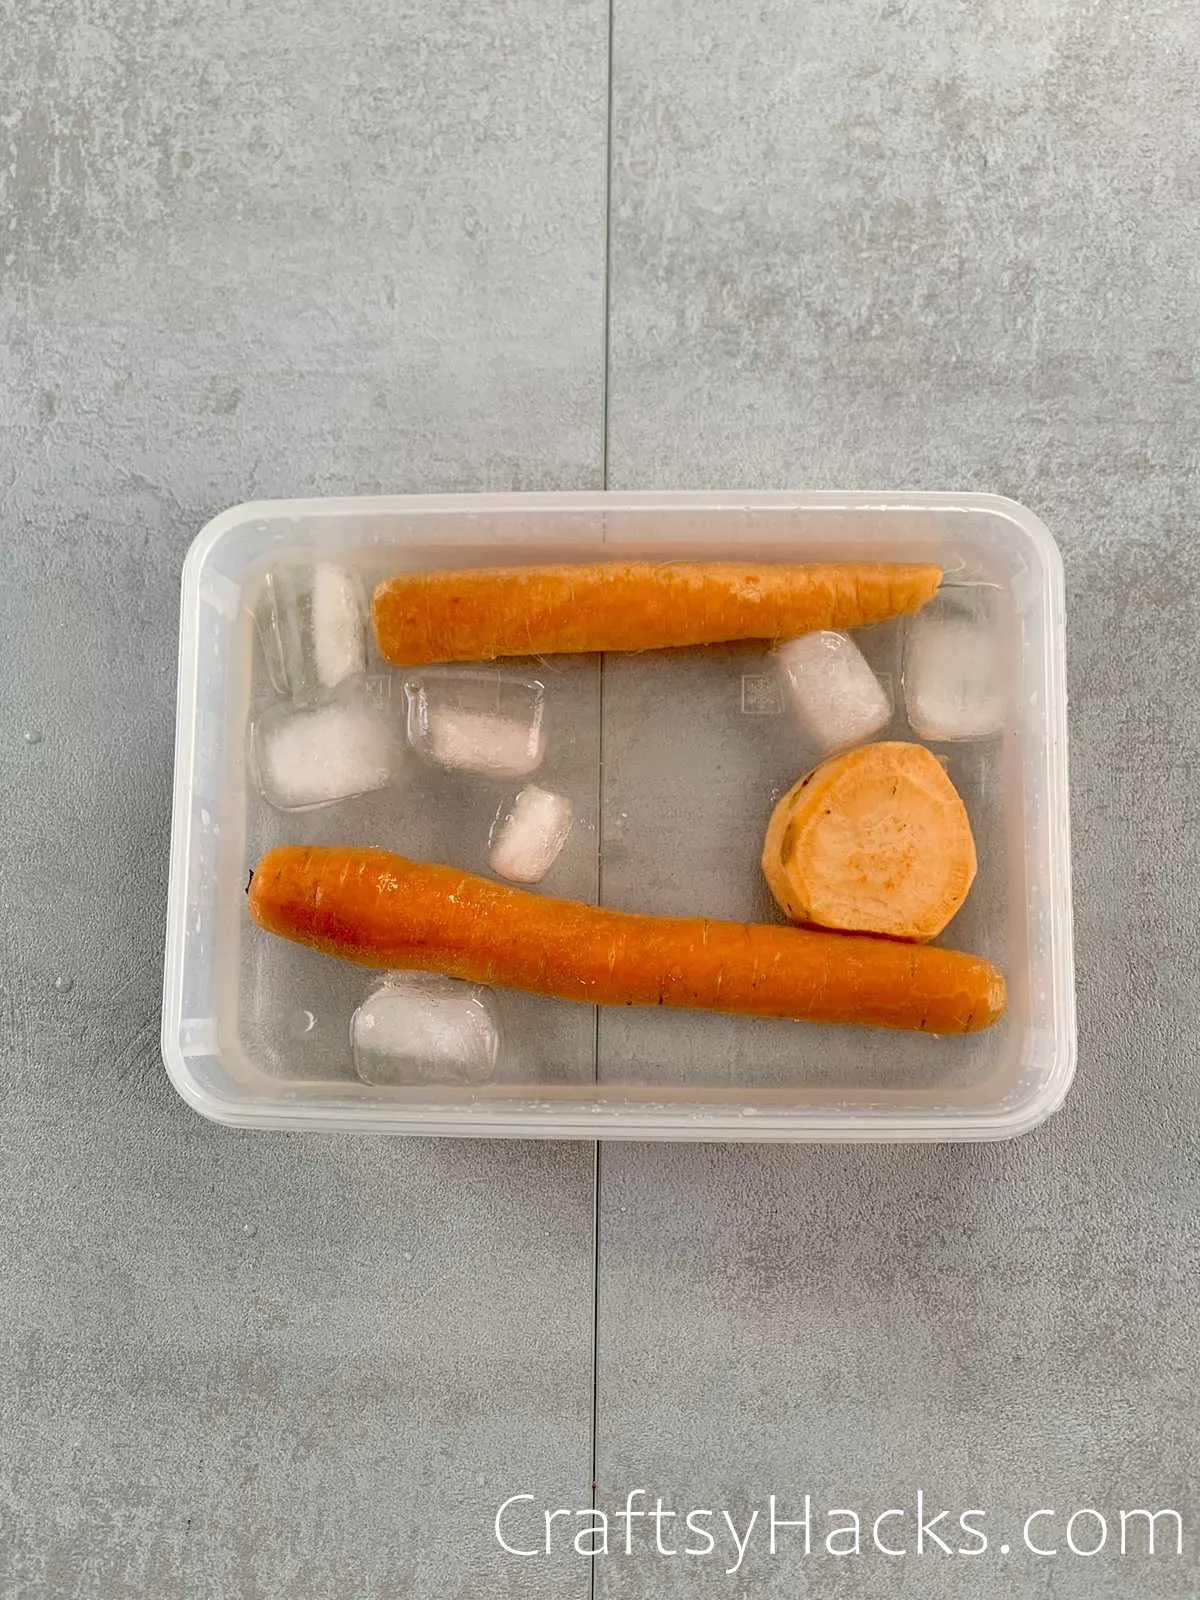 soak carrots in ice water